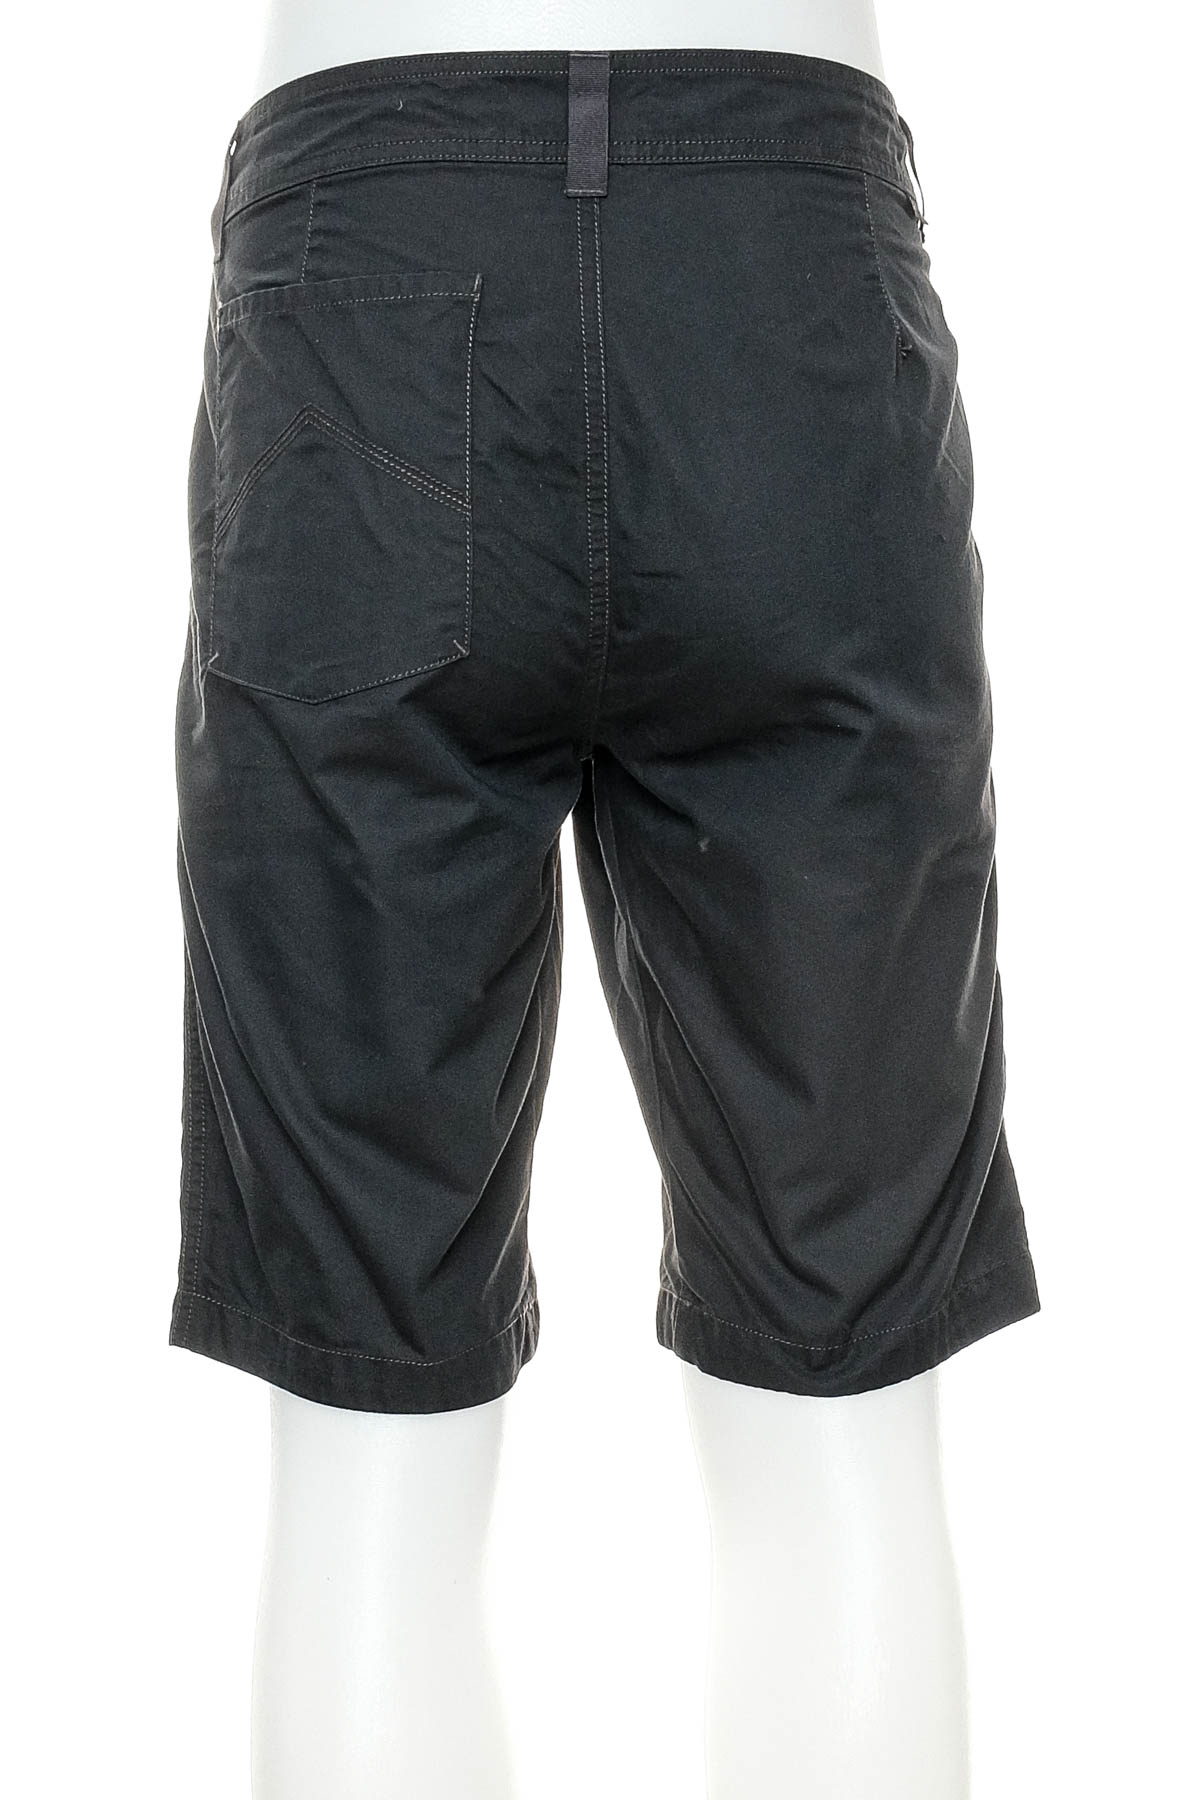 Men's shorts - Quechua - 1